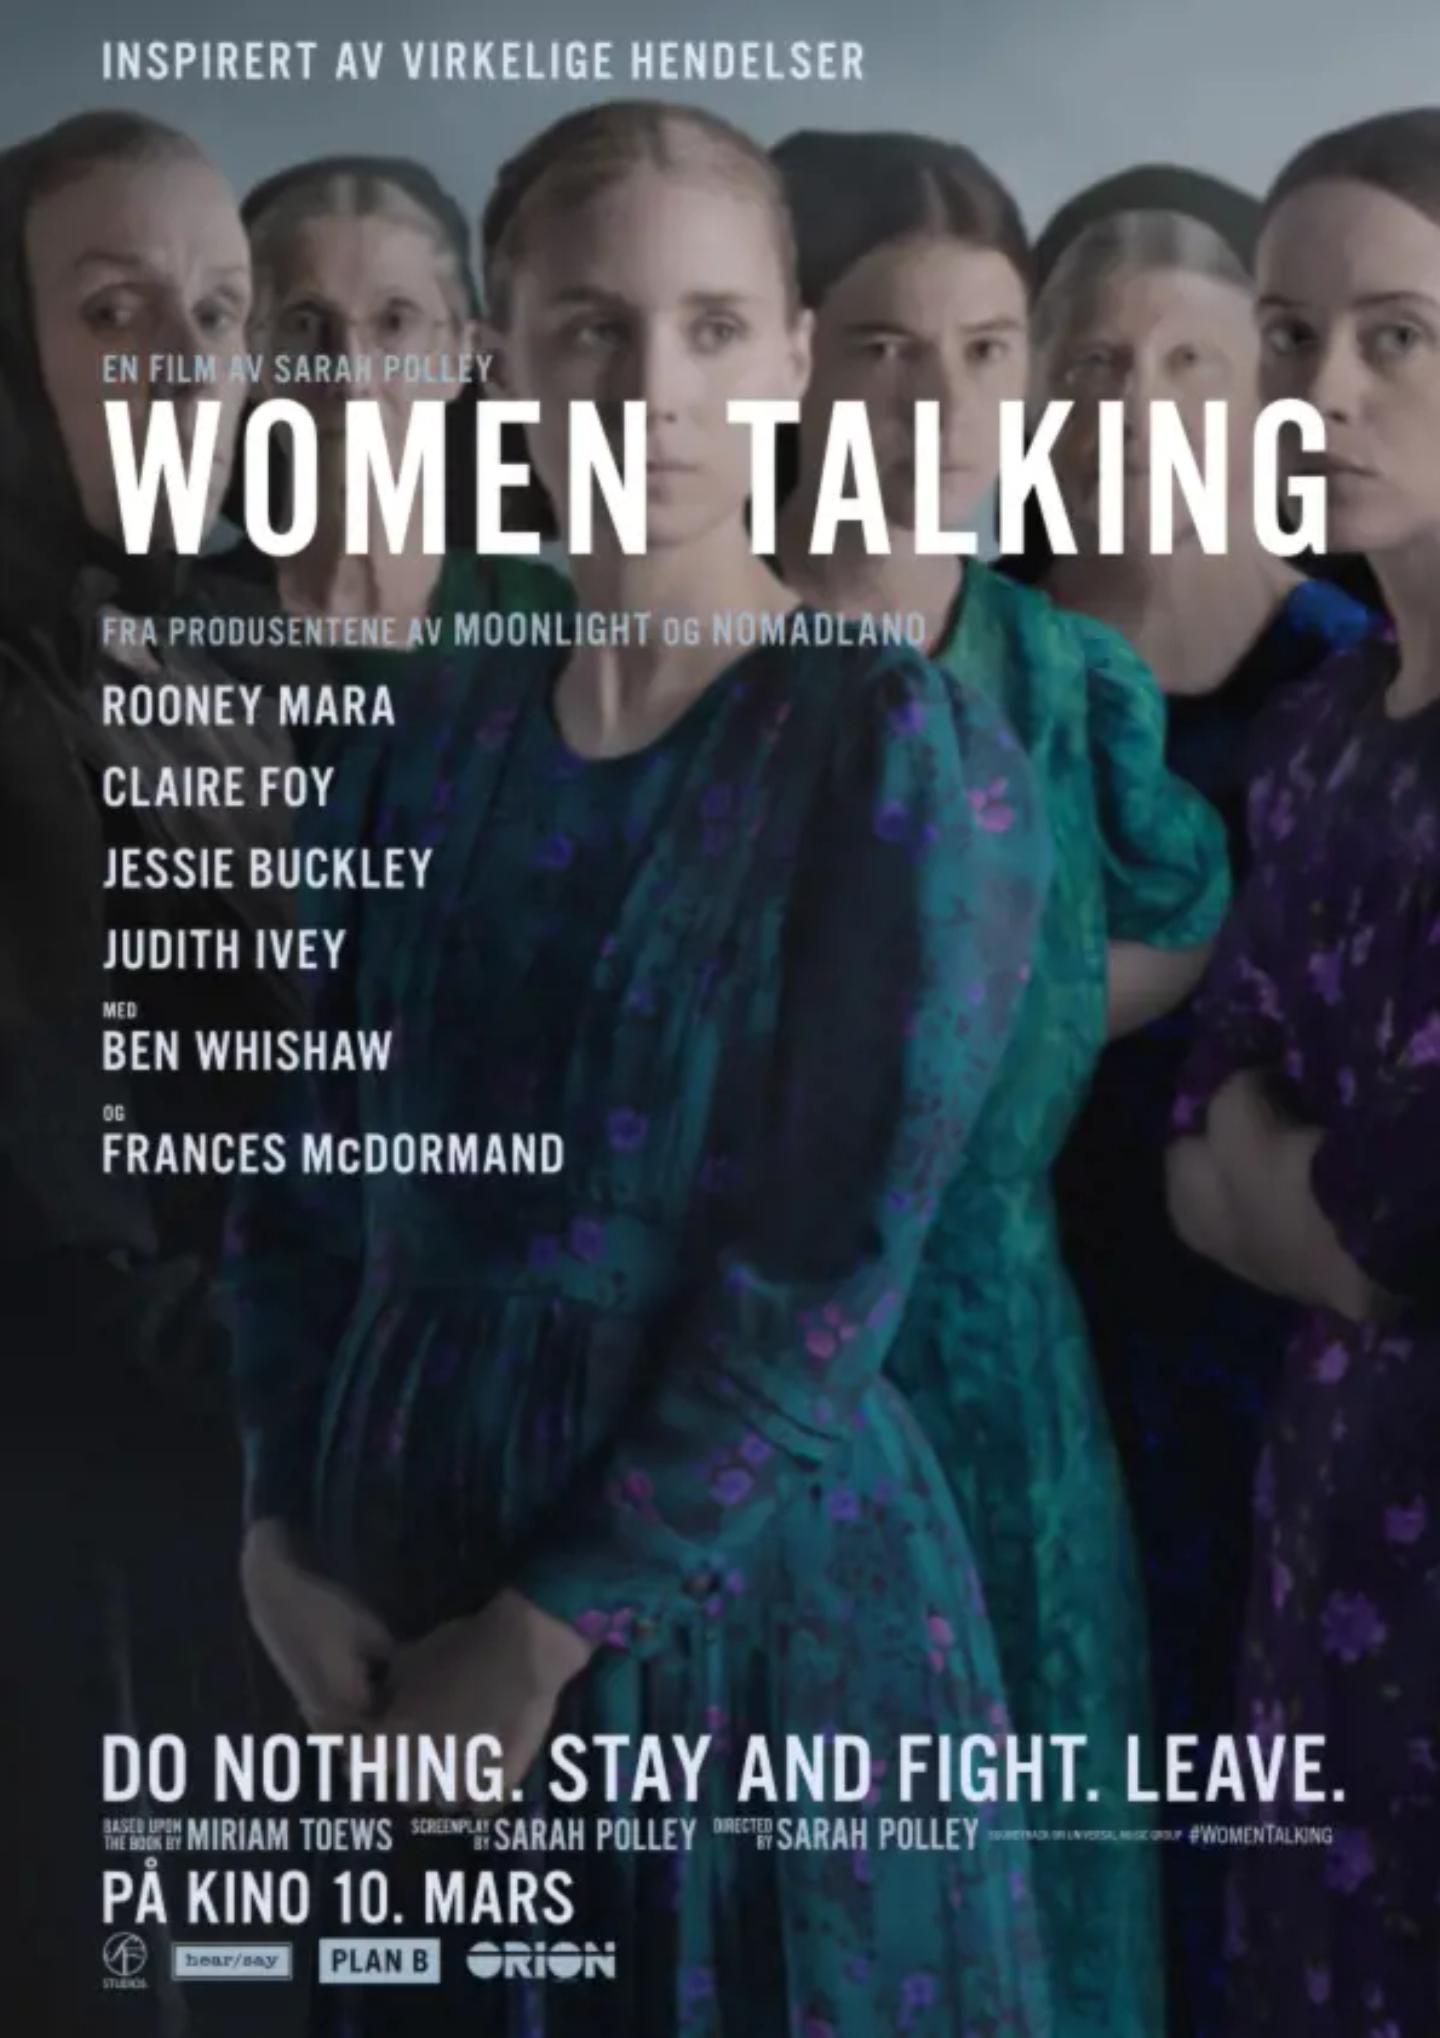 Plakat for 'Women Talking'